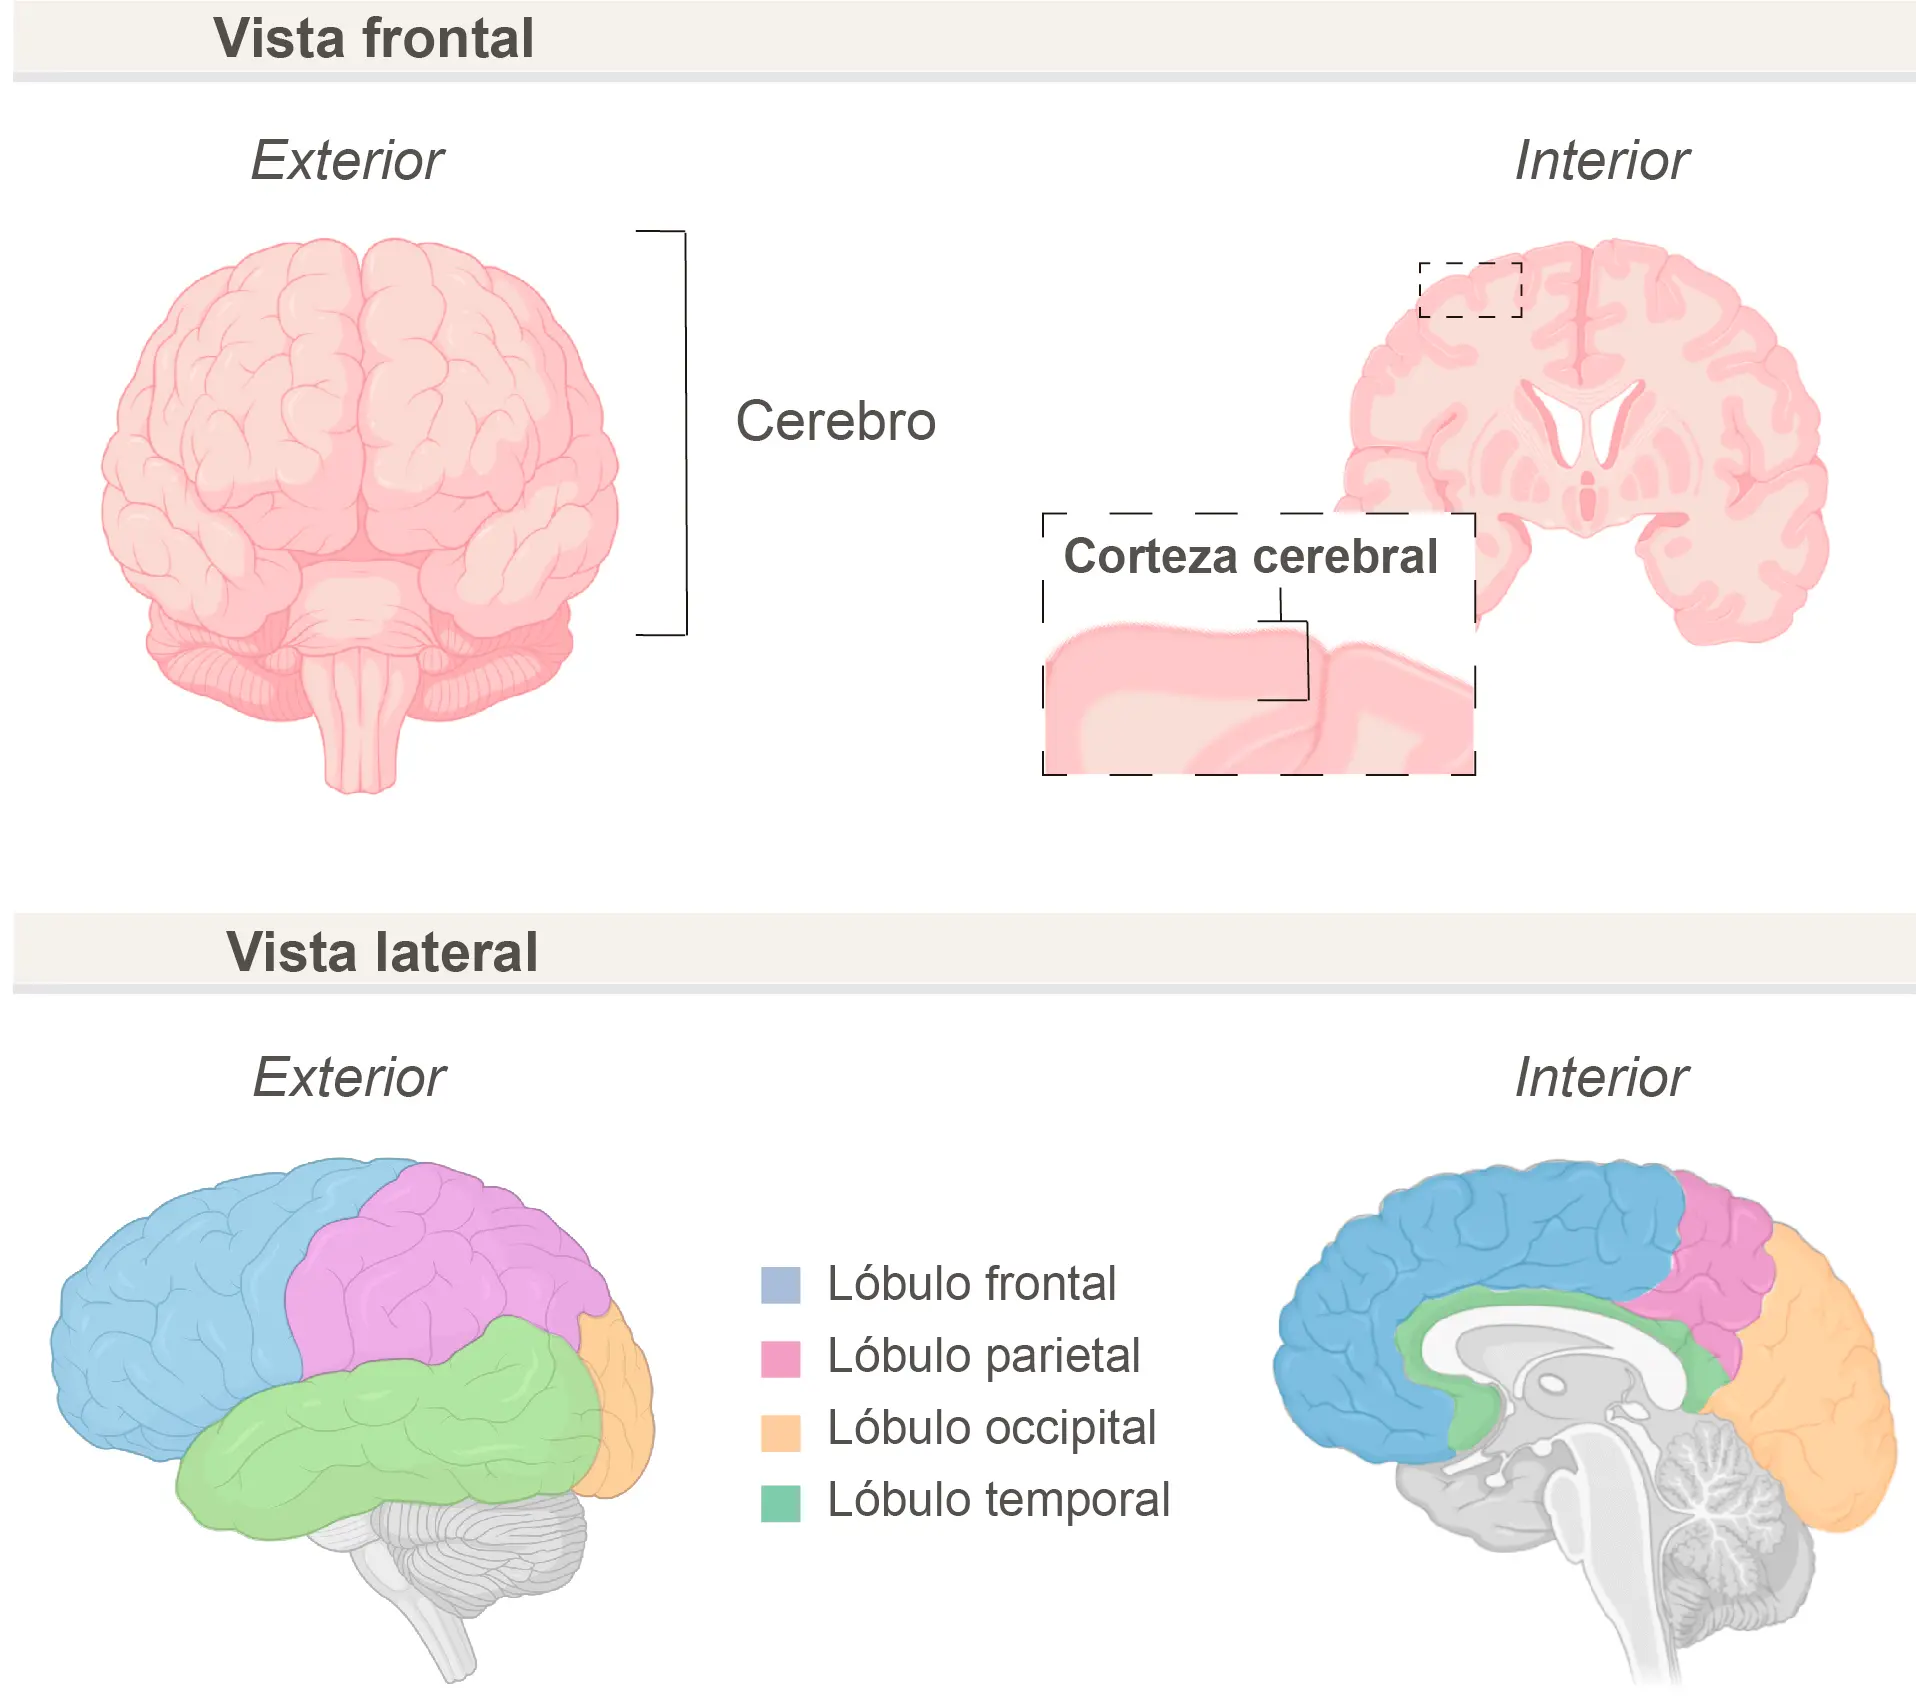 en que lado del serebroswe encuentra la inteligencia visual espasiañl - Qué parte del cerebro controla la inteligencia espacial